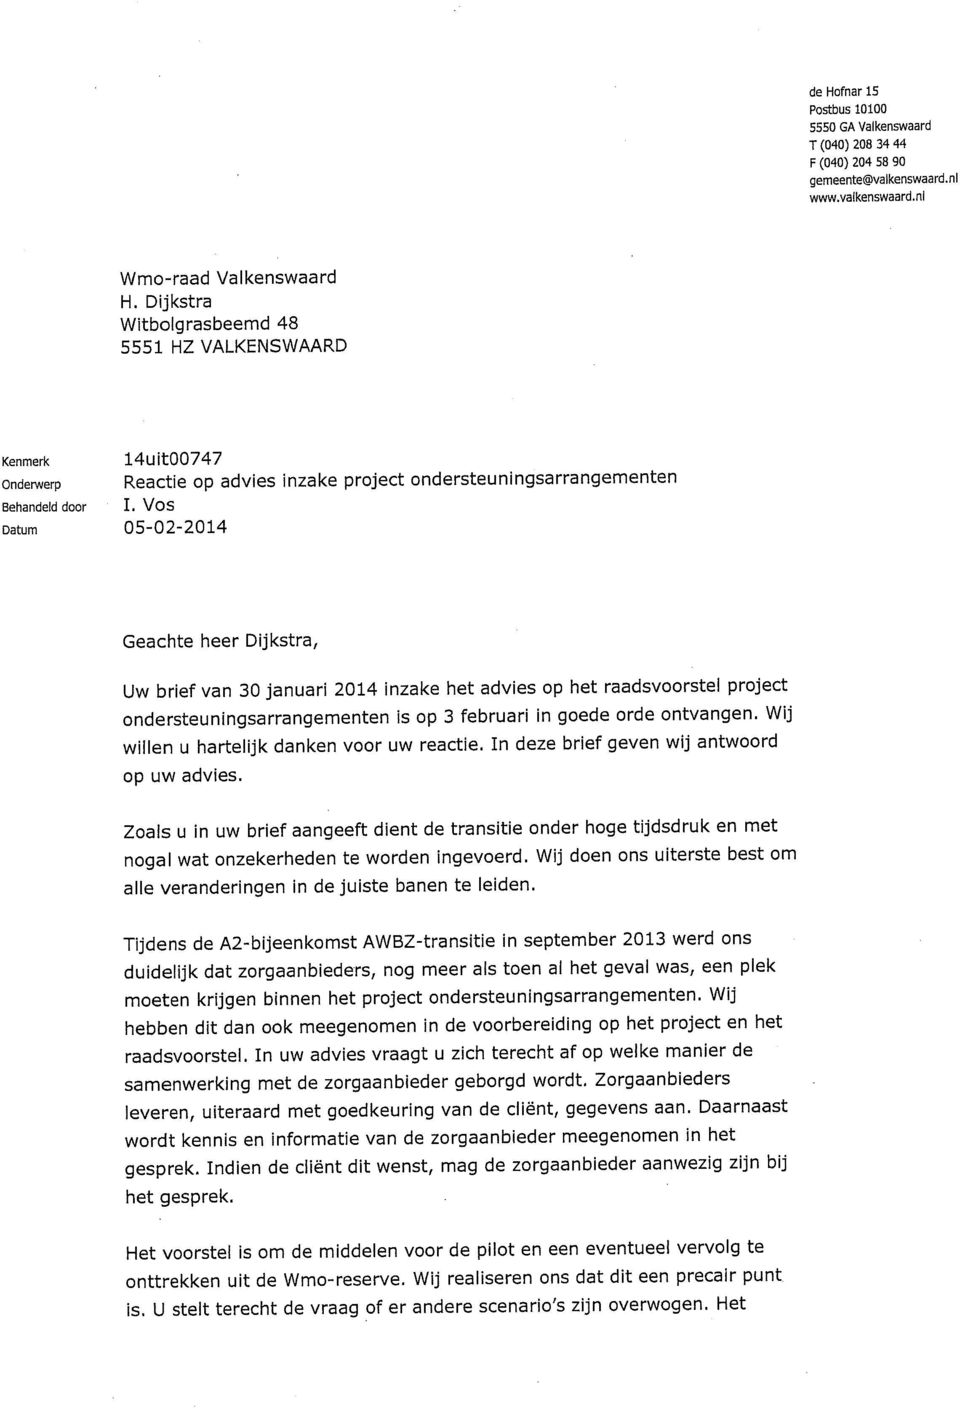 VOS Datum 05-02-2014 Geachte heer Dijkstra, Uw brief van 30 januari 2014 inzake het advies op het raadsvoorstel project ondersteuningsarrangementen is op 3 februari in goede orde ontvangen.